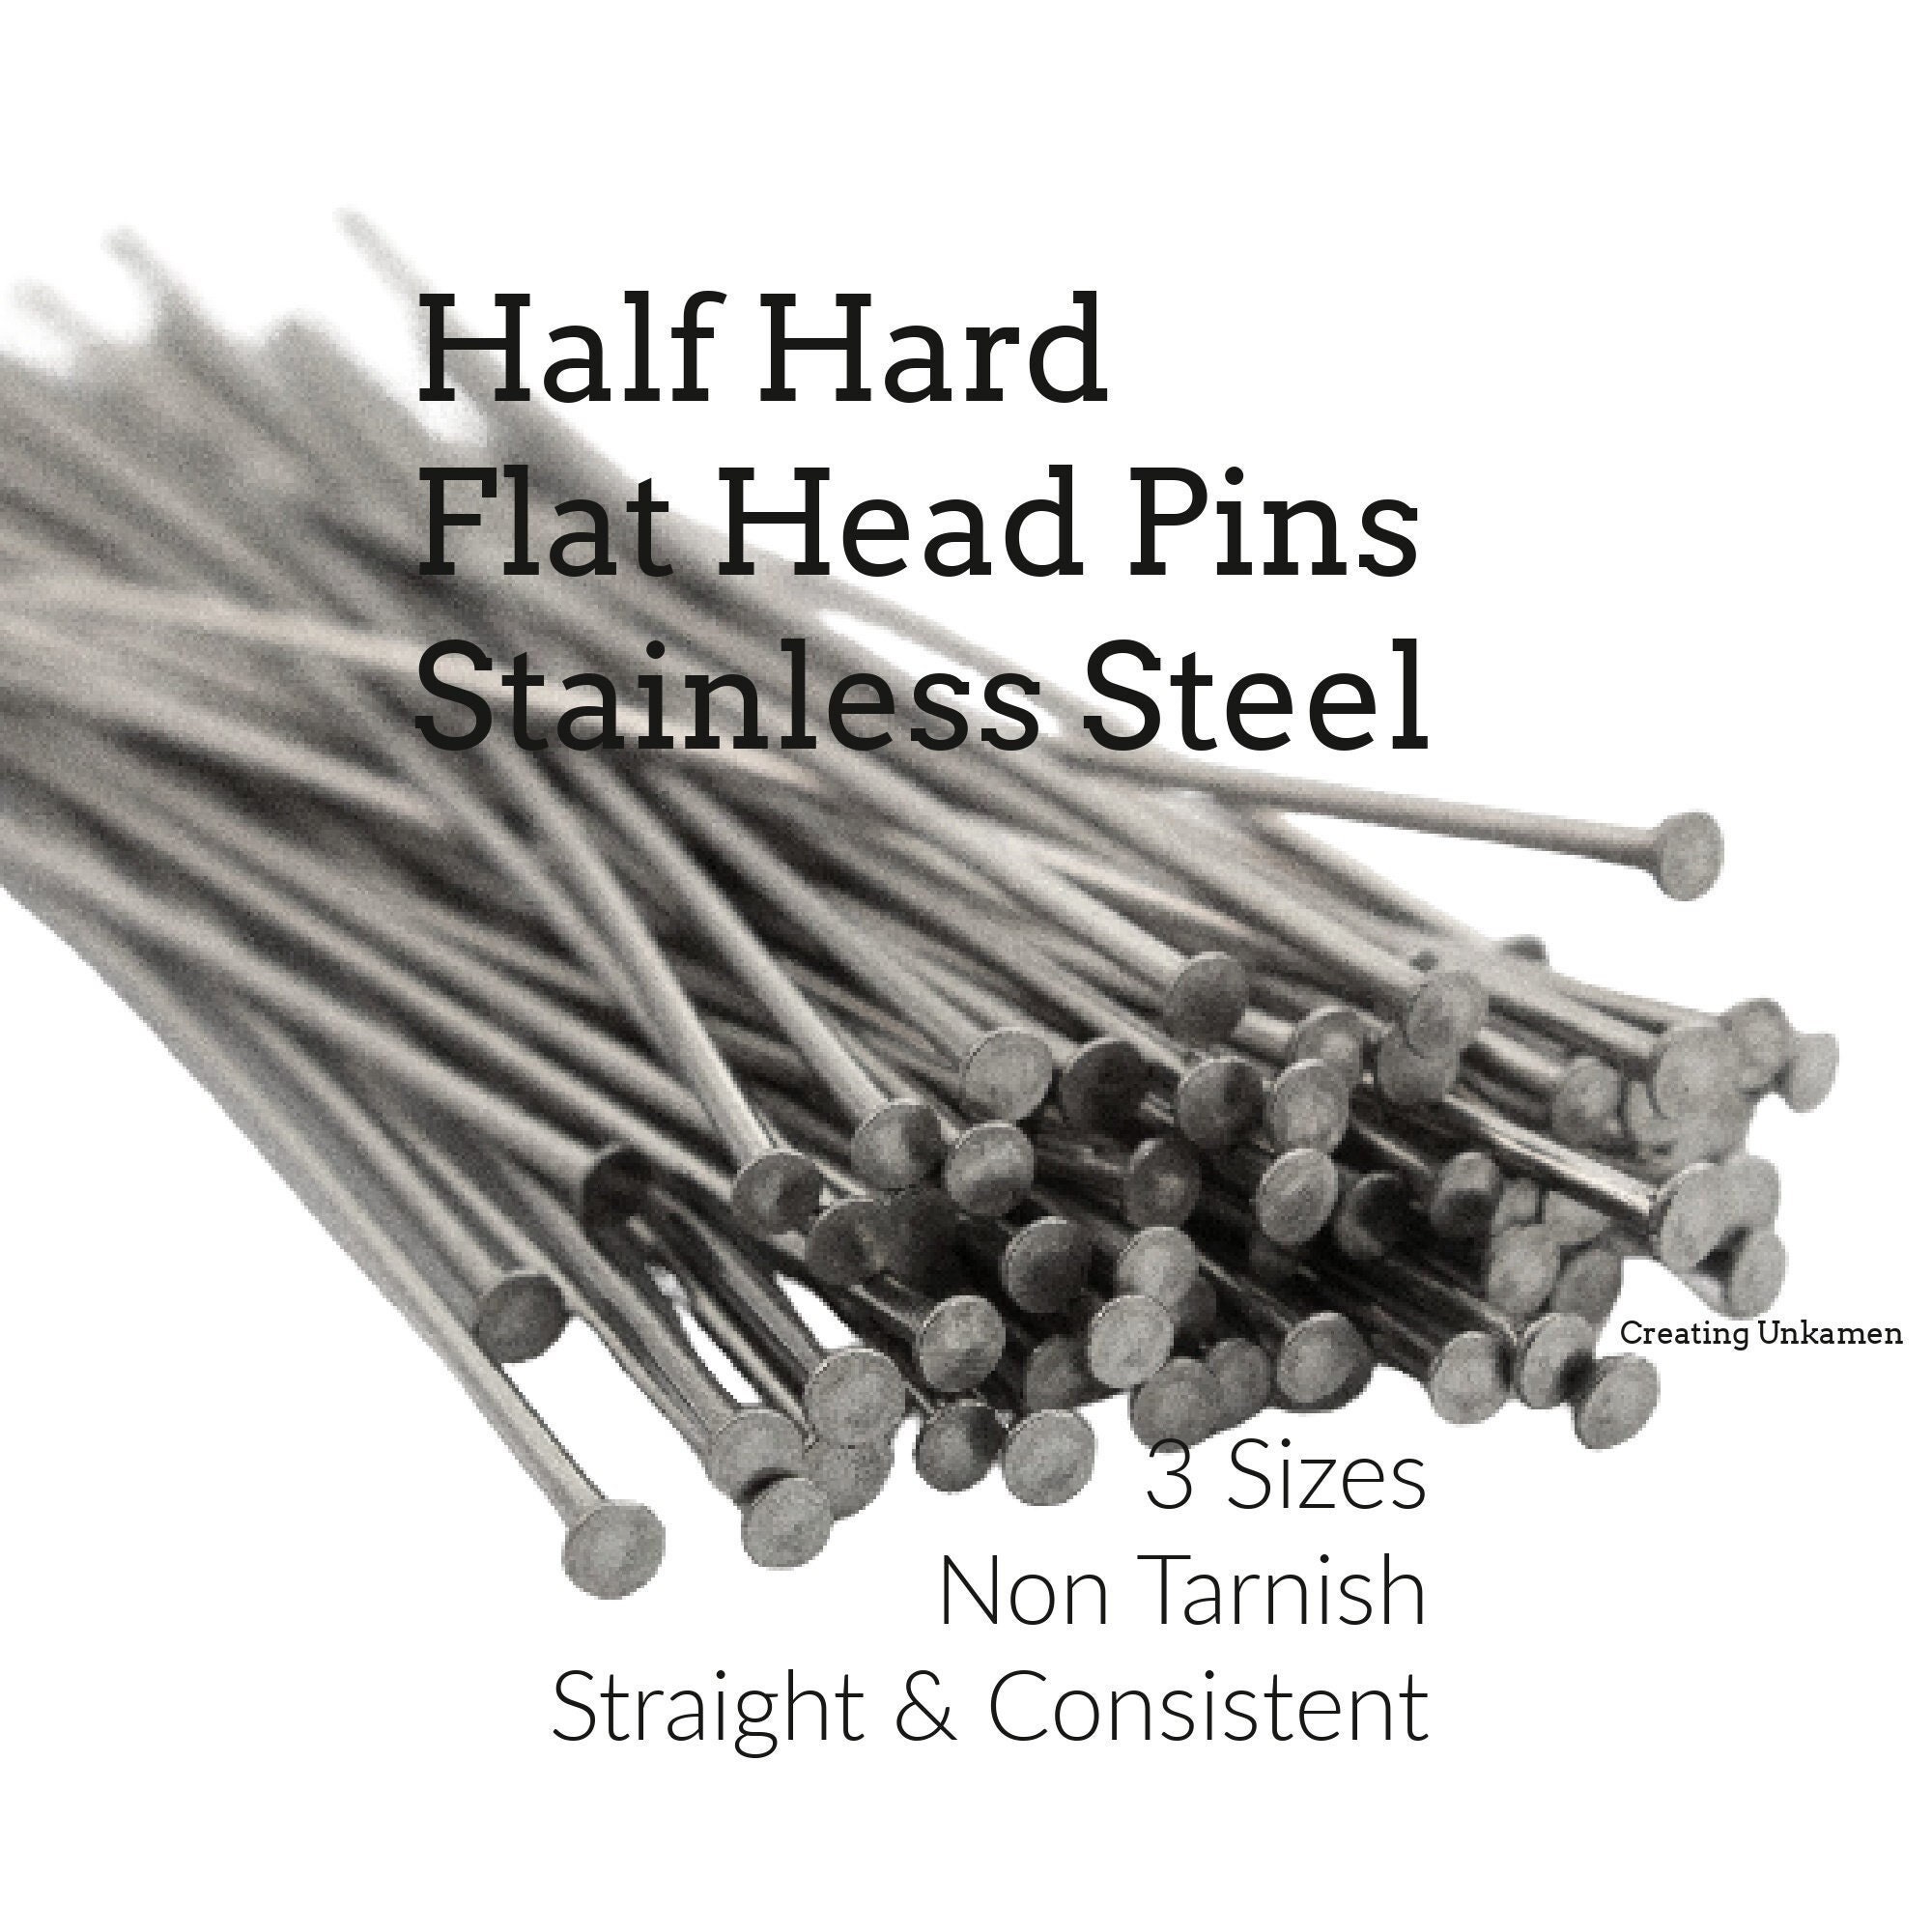 50 Half Hard Stainless Steel Flat Head Pins 21 Gauge or 24 Gauge